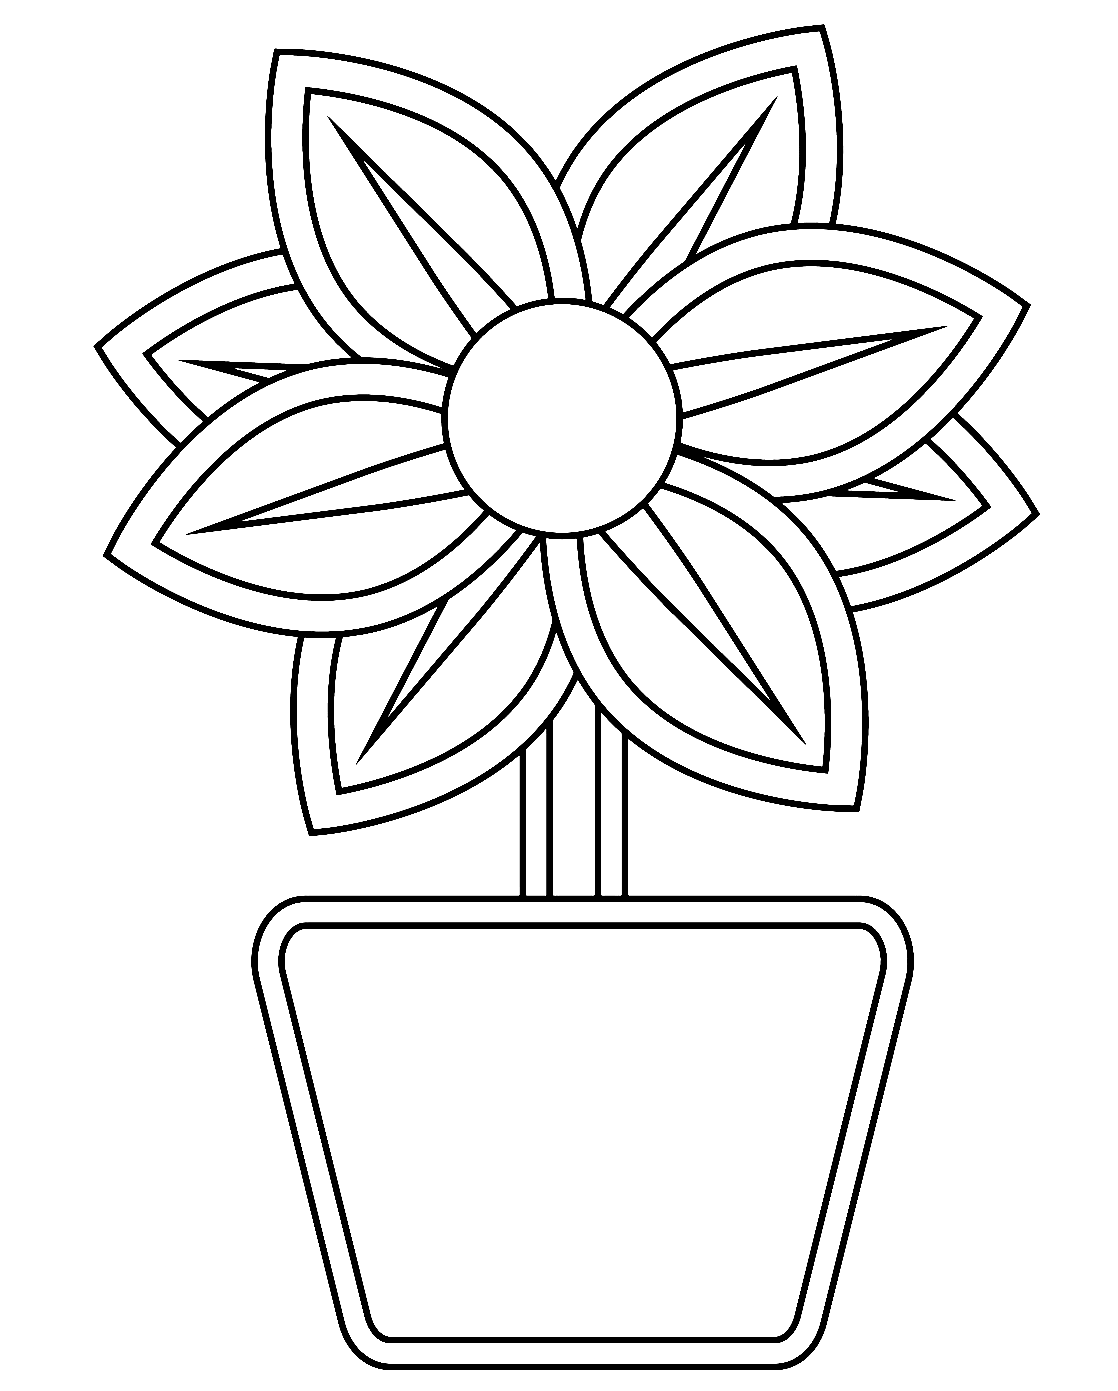 Immagine di un vaso di fiori da un vaso di fiori